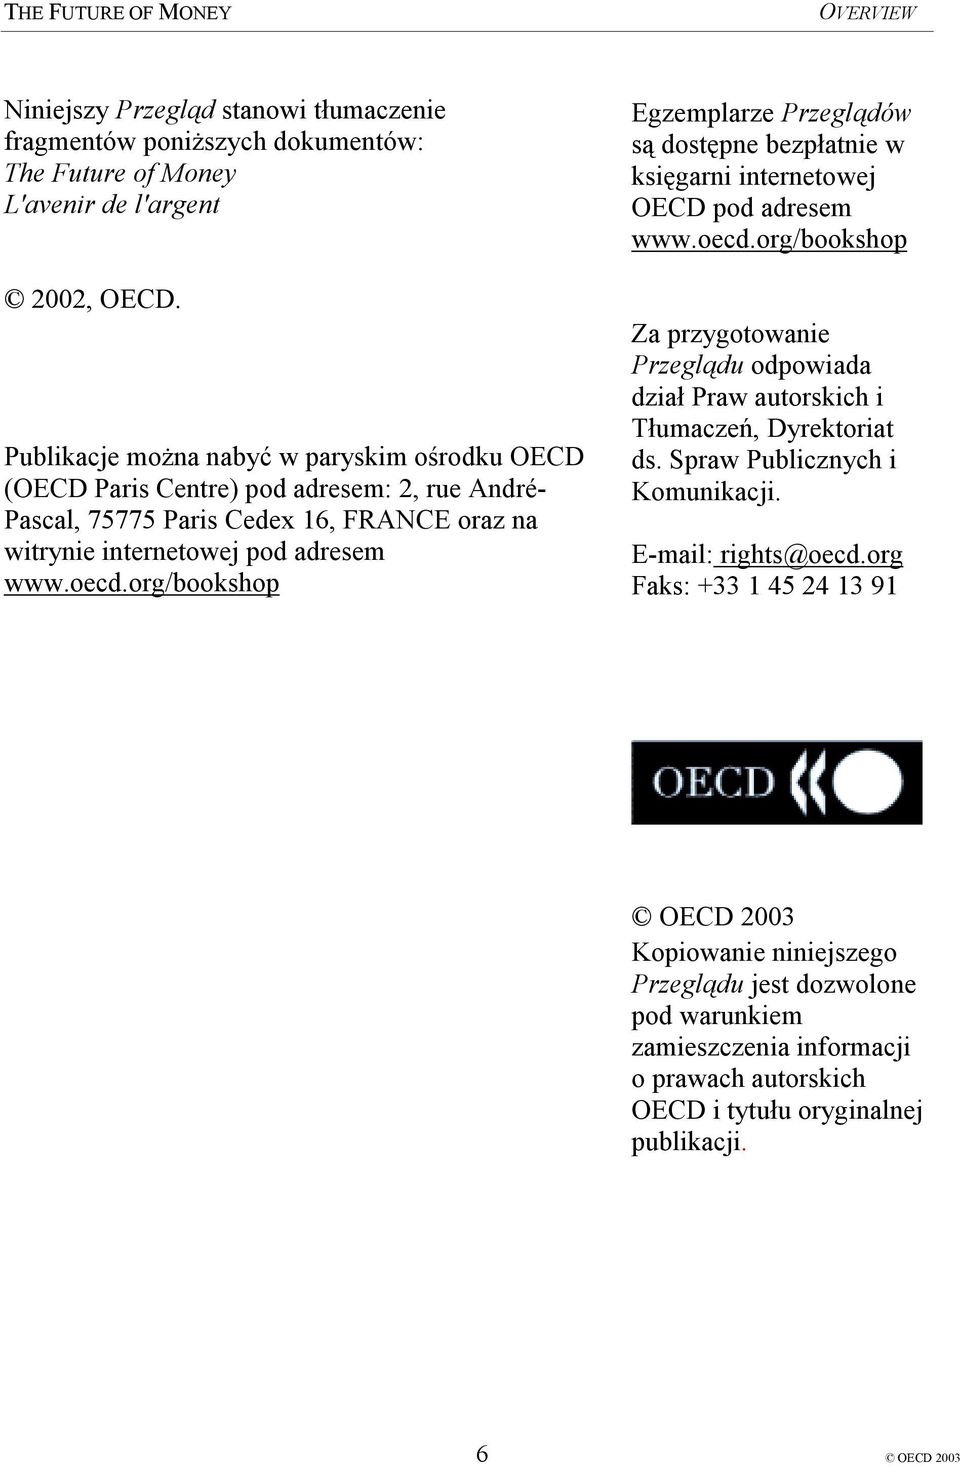 org/bookshop Egzemplarze Przeglądów są dostępne bezpłatnie w księgarni internetowej OECD pod adresem www.oecd.